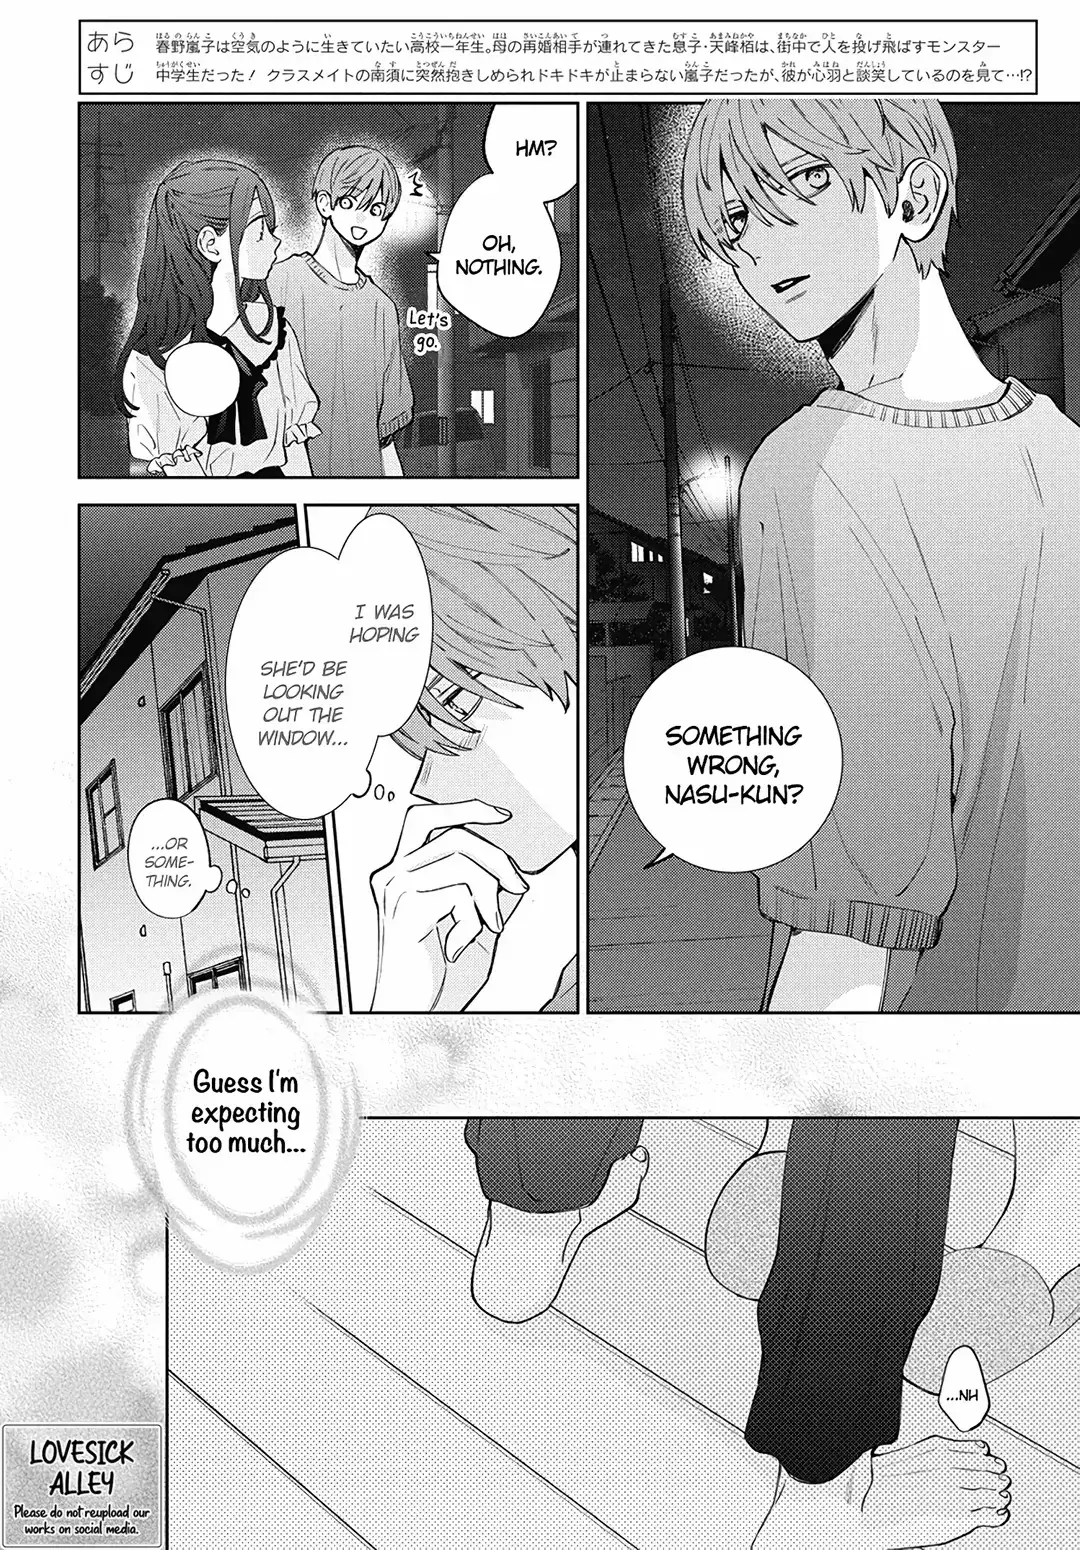 Haru No Arashi To Monster - 22 page 4-6213af2c